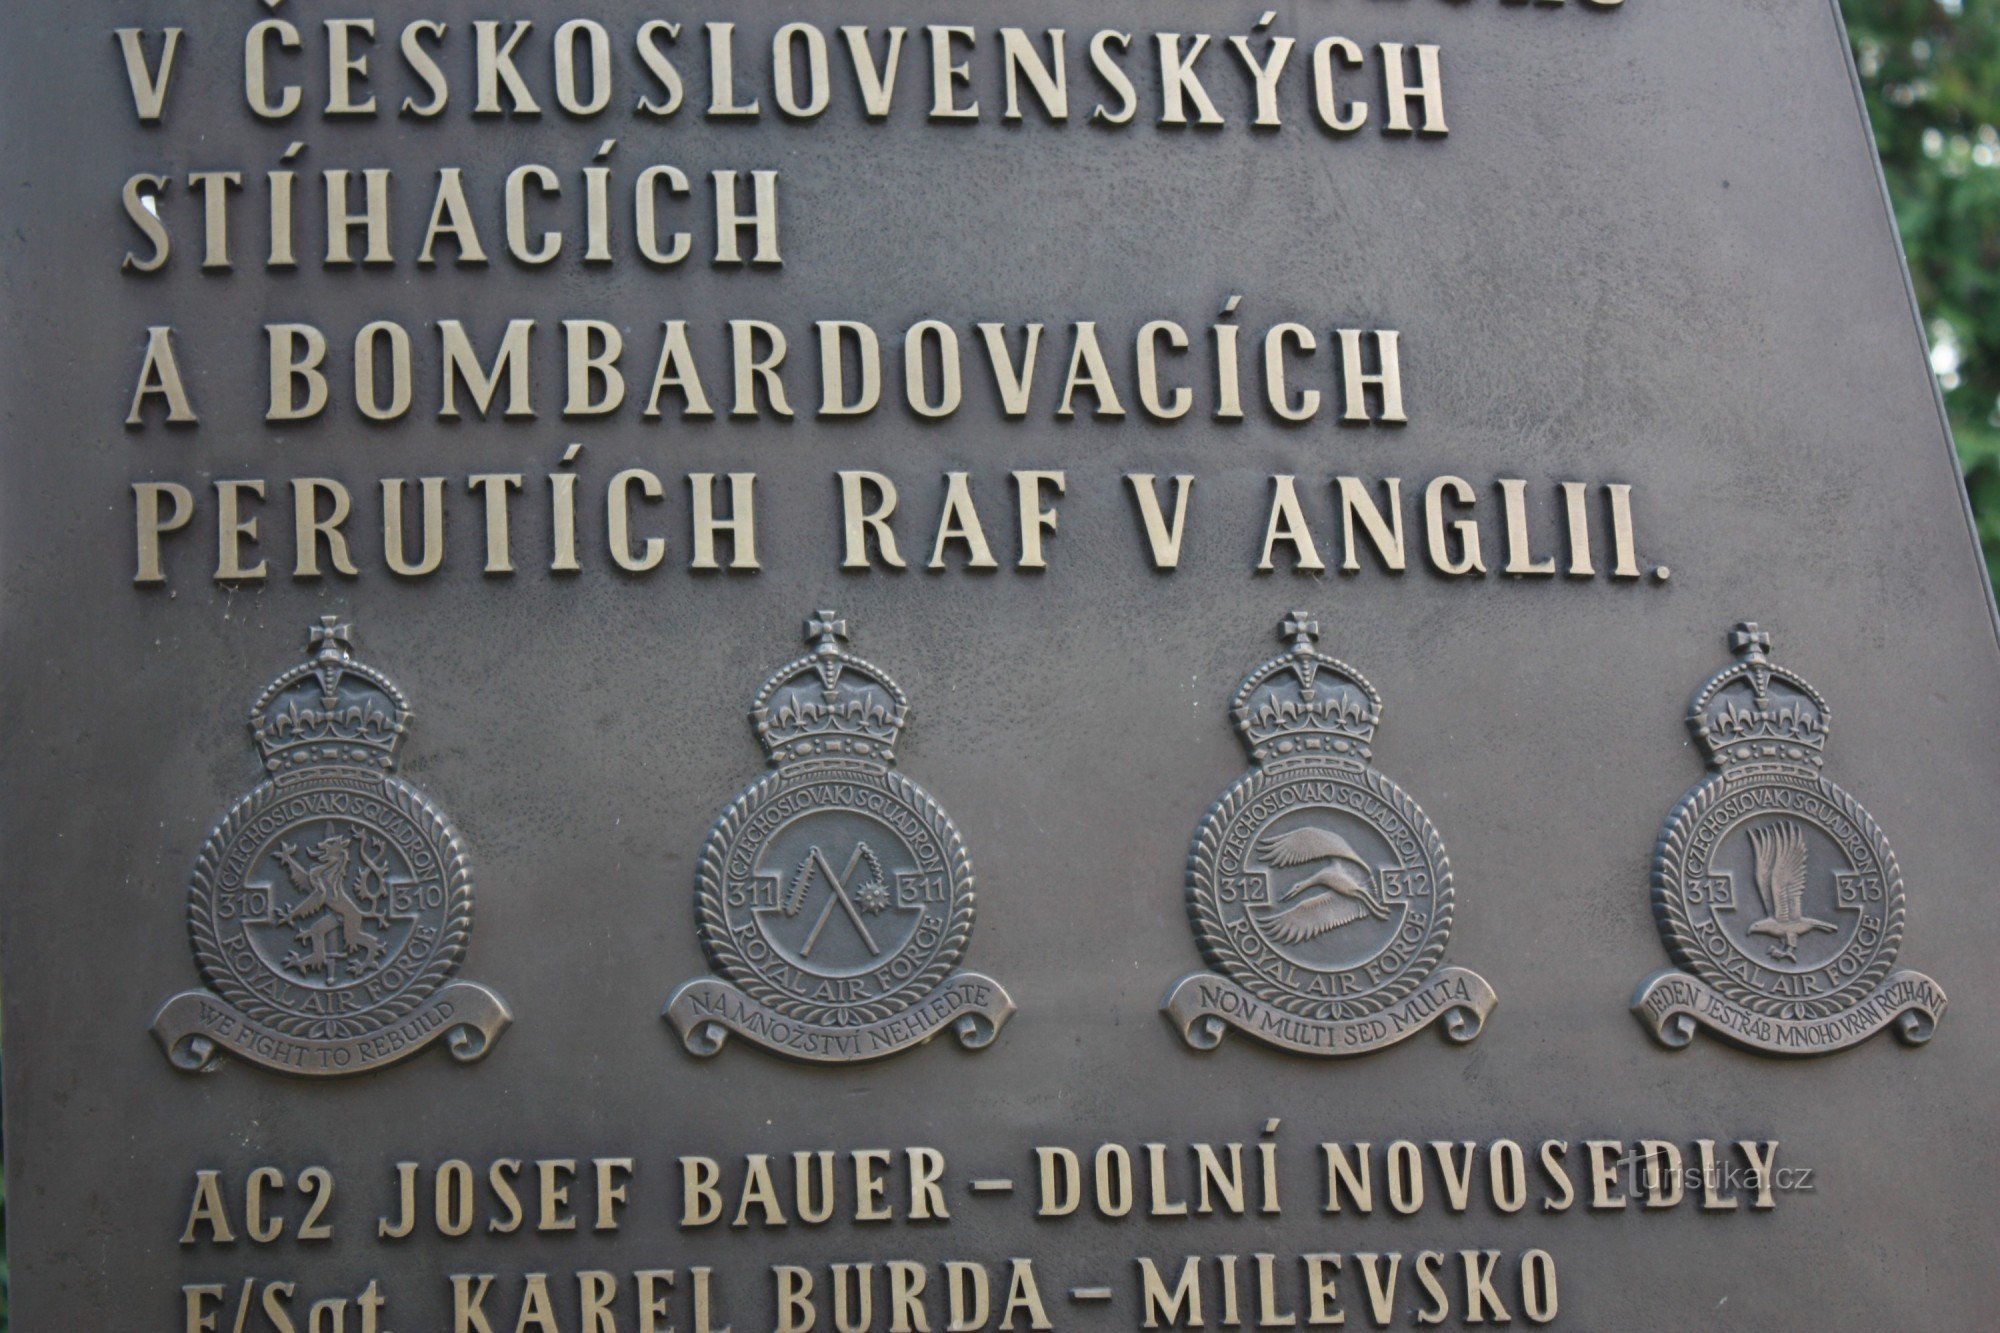 Tšekkoslovakian 310, 311,312,313, XNUMX, XNUMX RAF-lentueen tunnukset